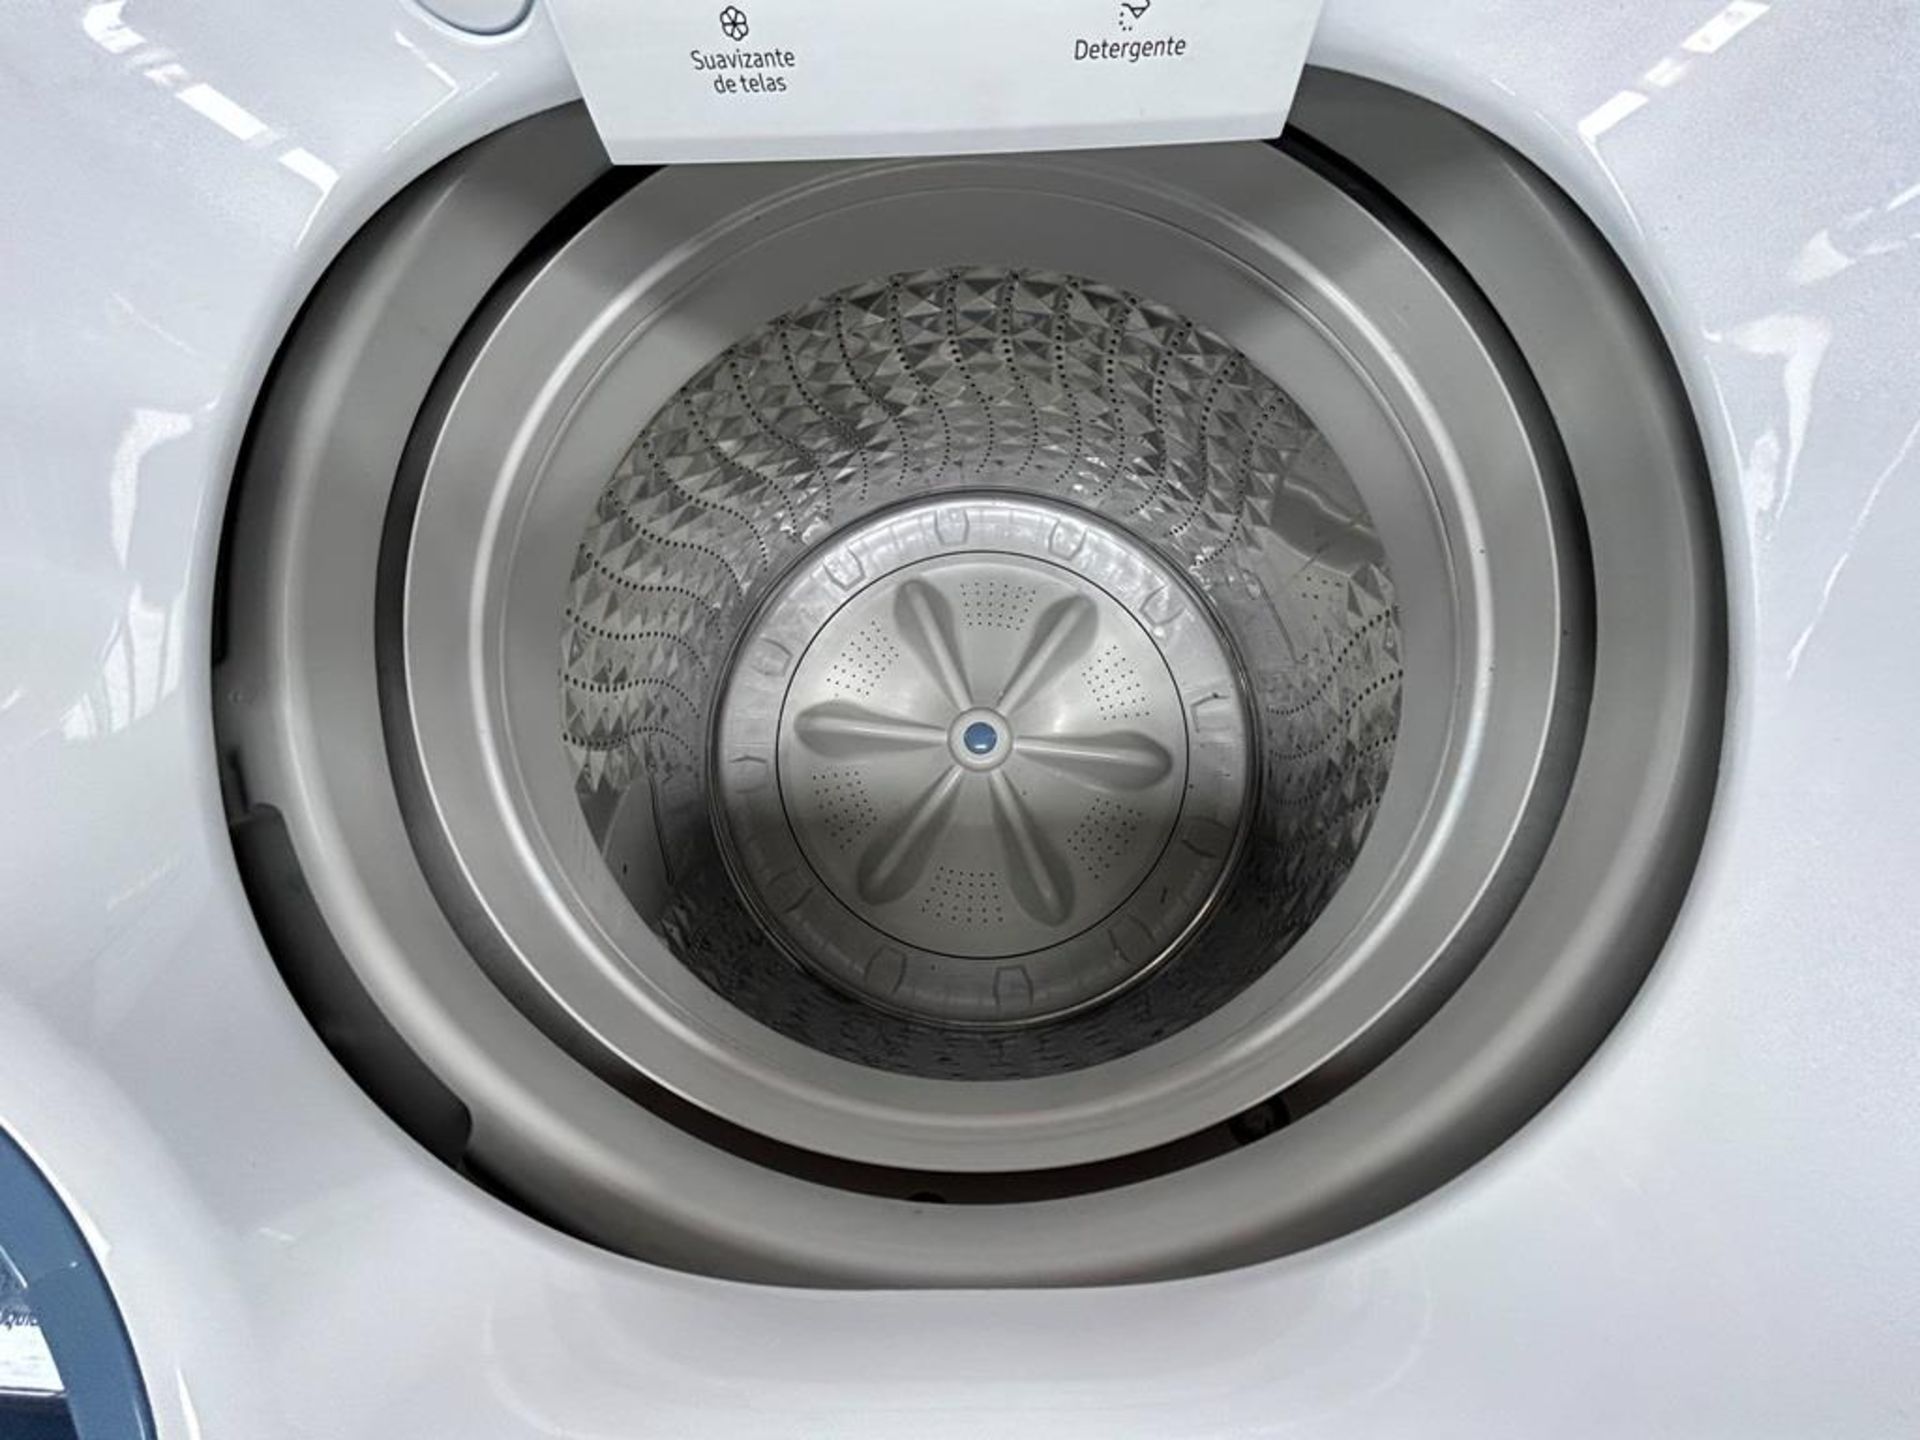 Lote de 2 lavadoras contiene: 1 Lavadora de 20 KG Marca SAMSUNG, Modelo WA20A3350GW, Serie 0027IF, - Image 4 of 6